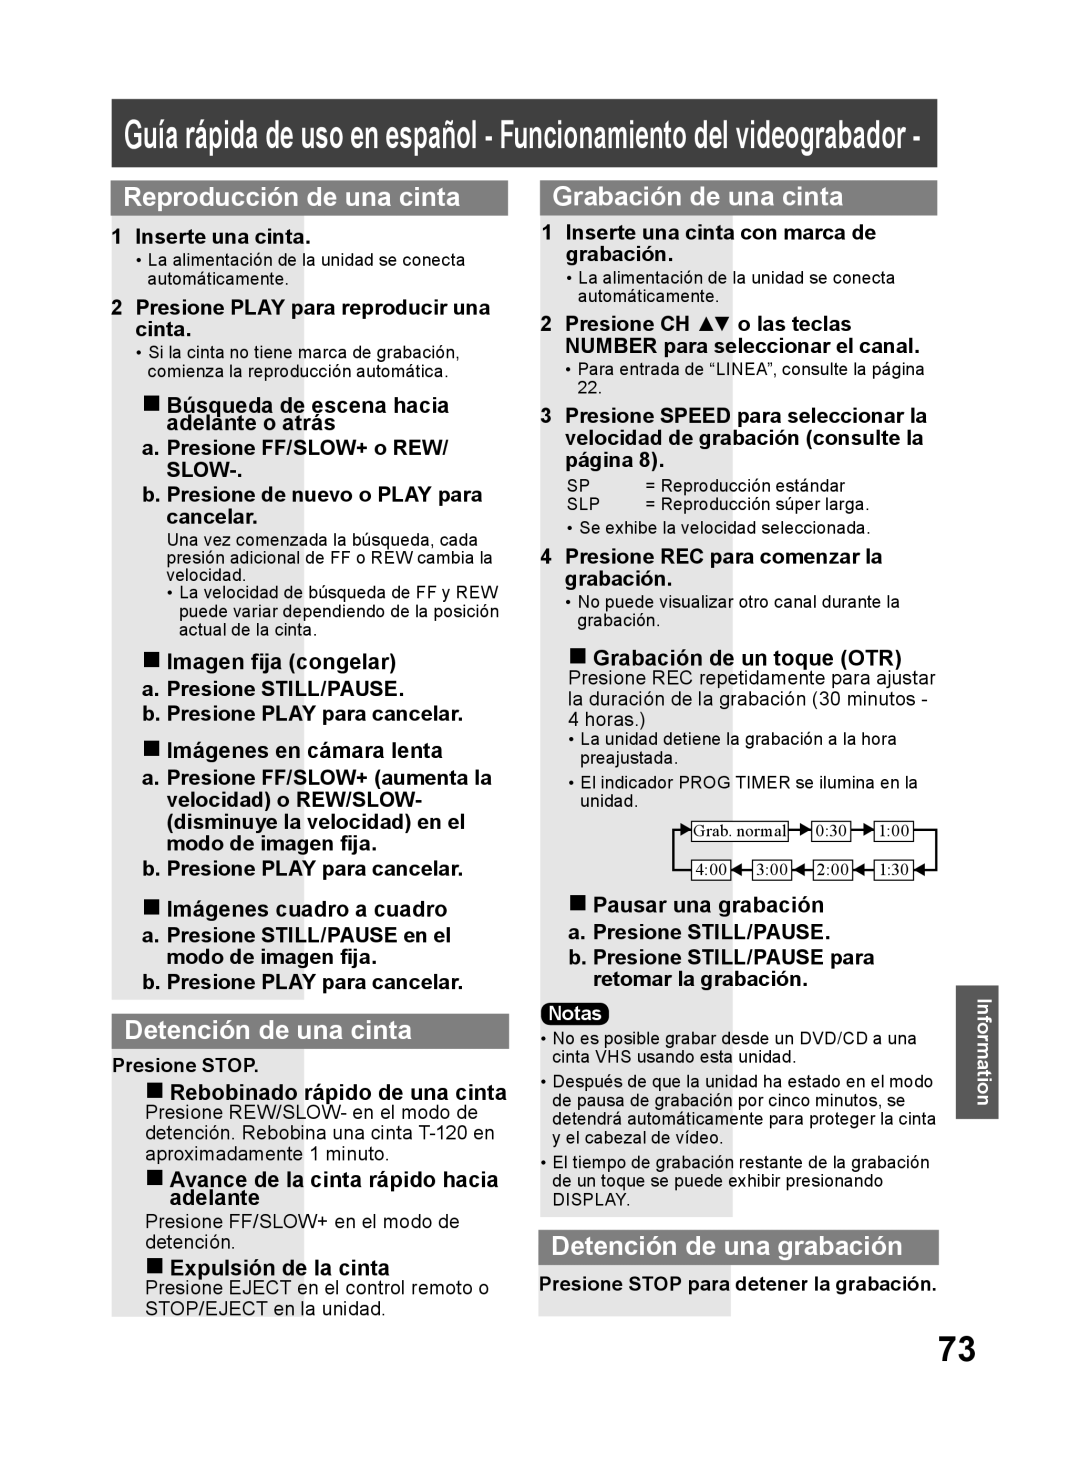 Panasonic PV DF2704, PV DF2004 Guía rápida de uso en español - Funcionamiento del videograbador, Reproducción de una cinta 